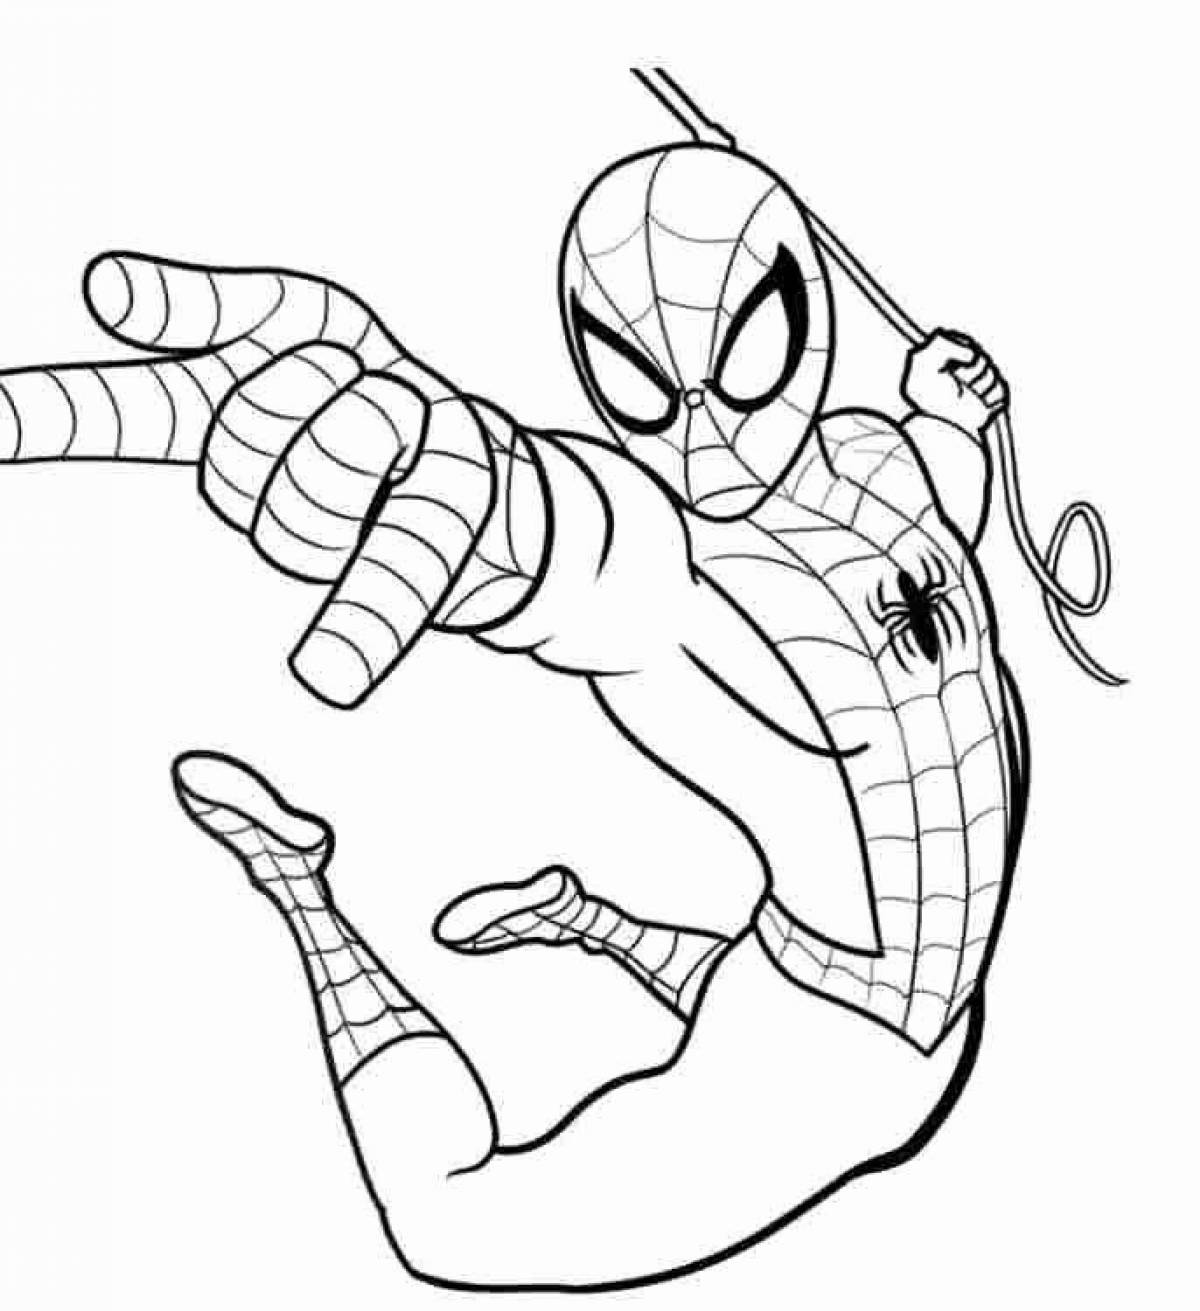 Детализированная страница раскраски человека-паука